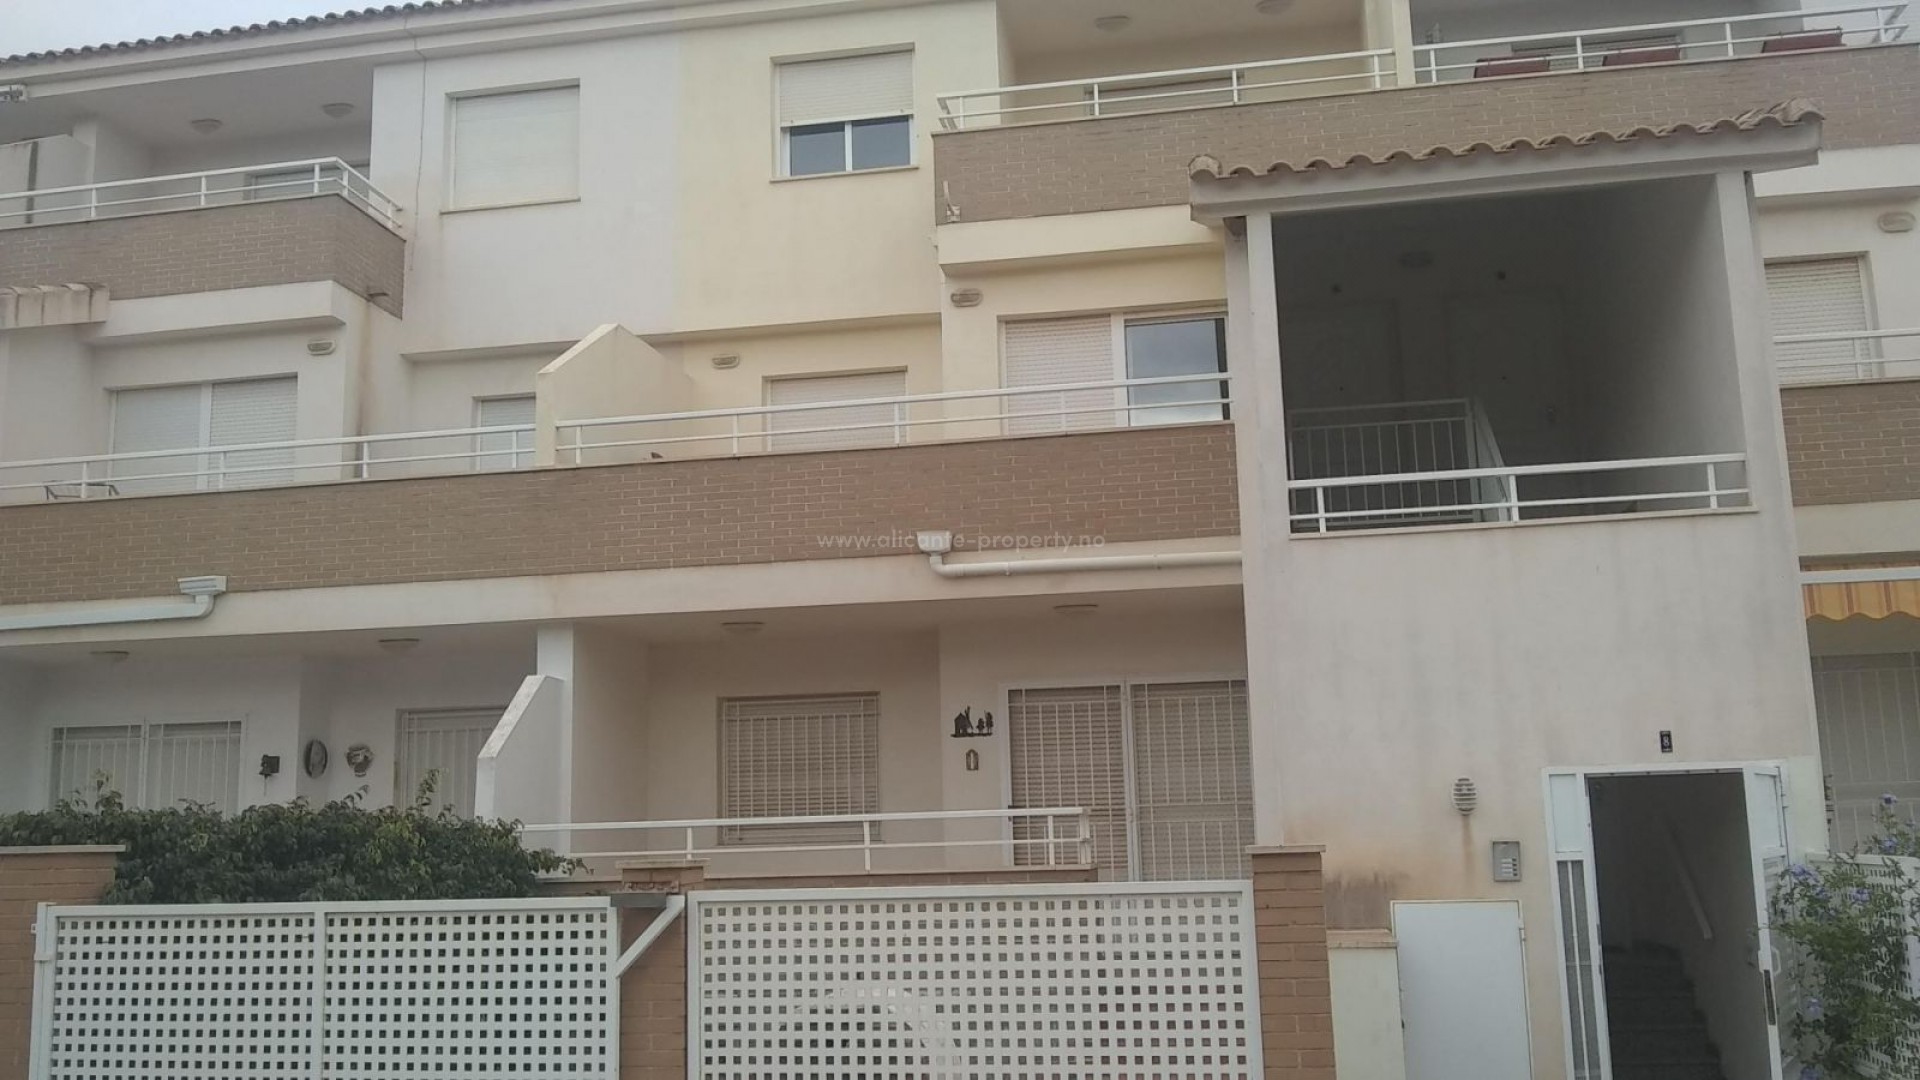 Billig/rimelig leilighet i Spania - equity release bolig i San Cayetano, 50% rabatt, 3 soverom, 2 bad, 2 terrasser og hage, felles basseng og tennisbane